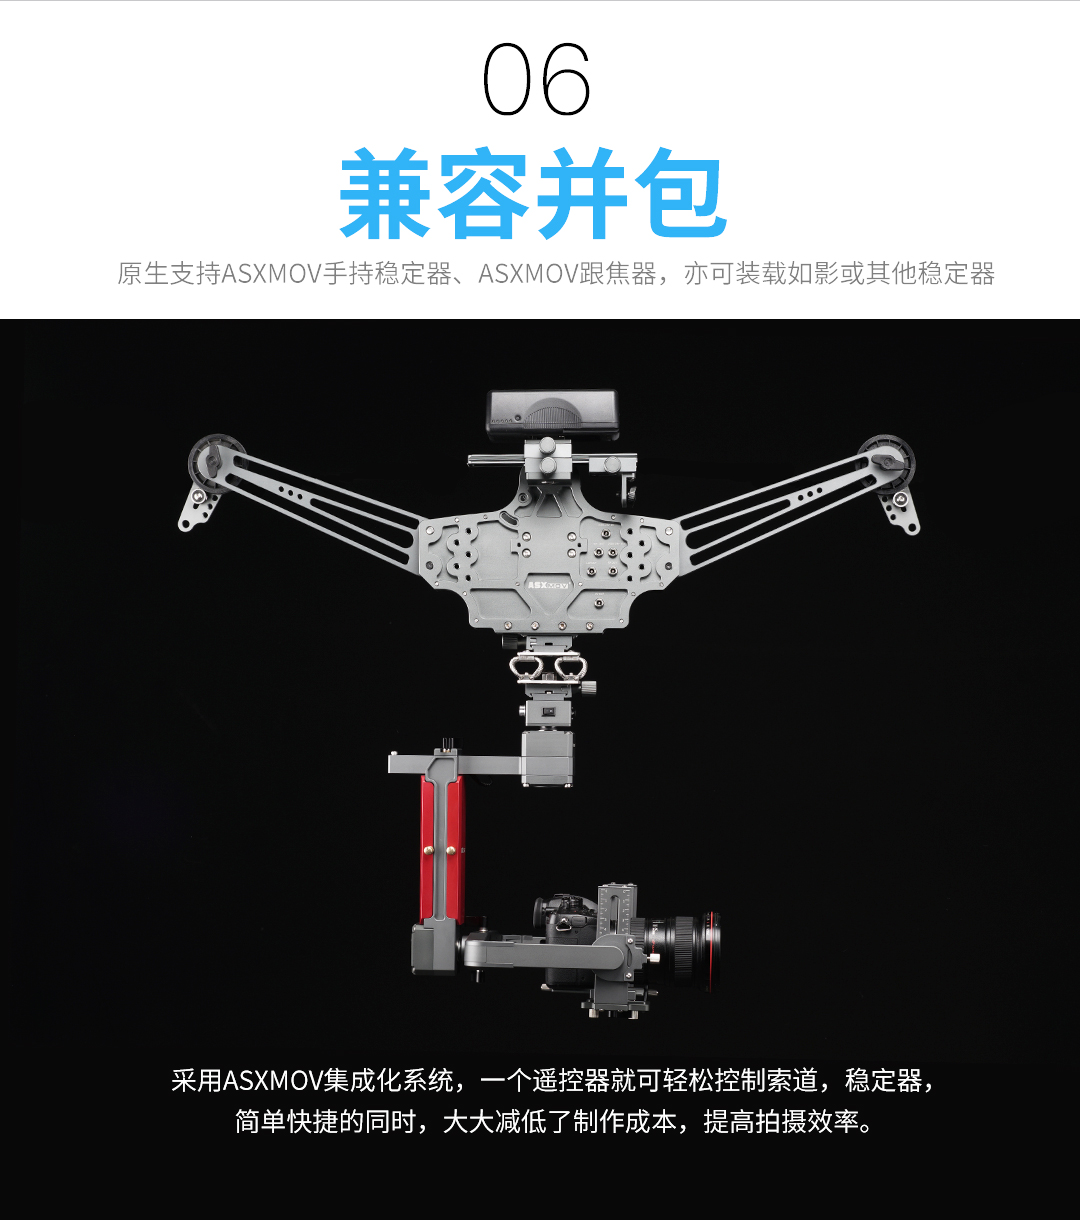 索道拍摄系统-中文版2018.11_14.jpg